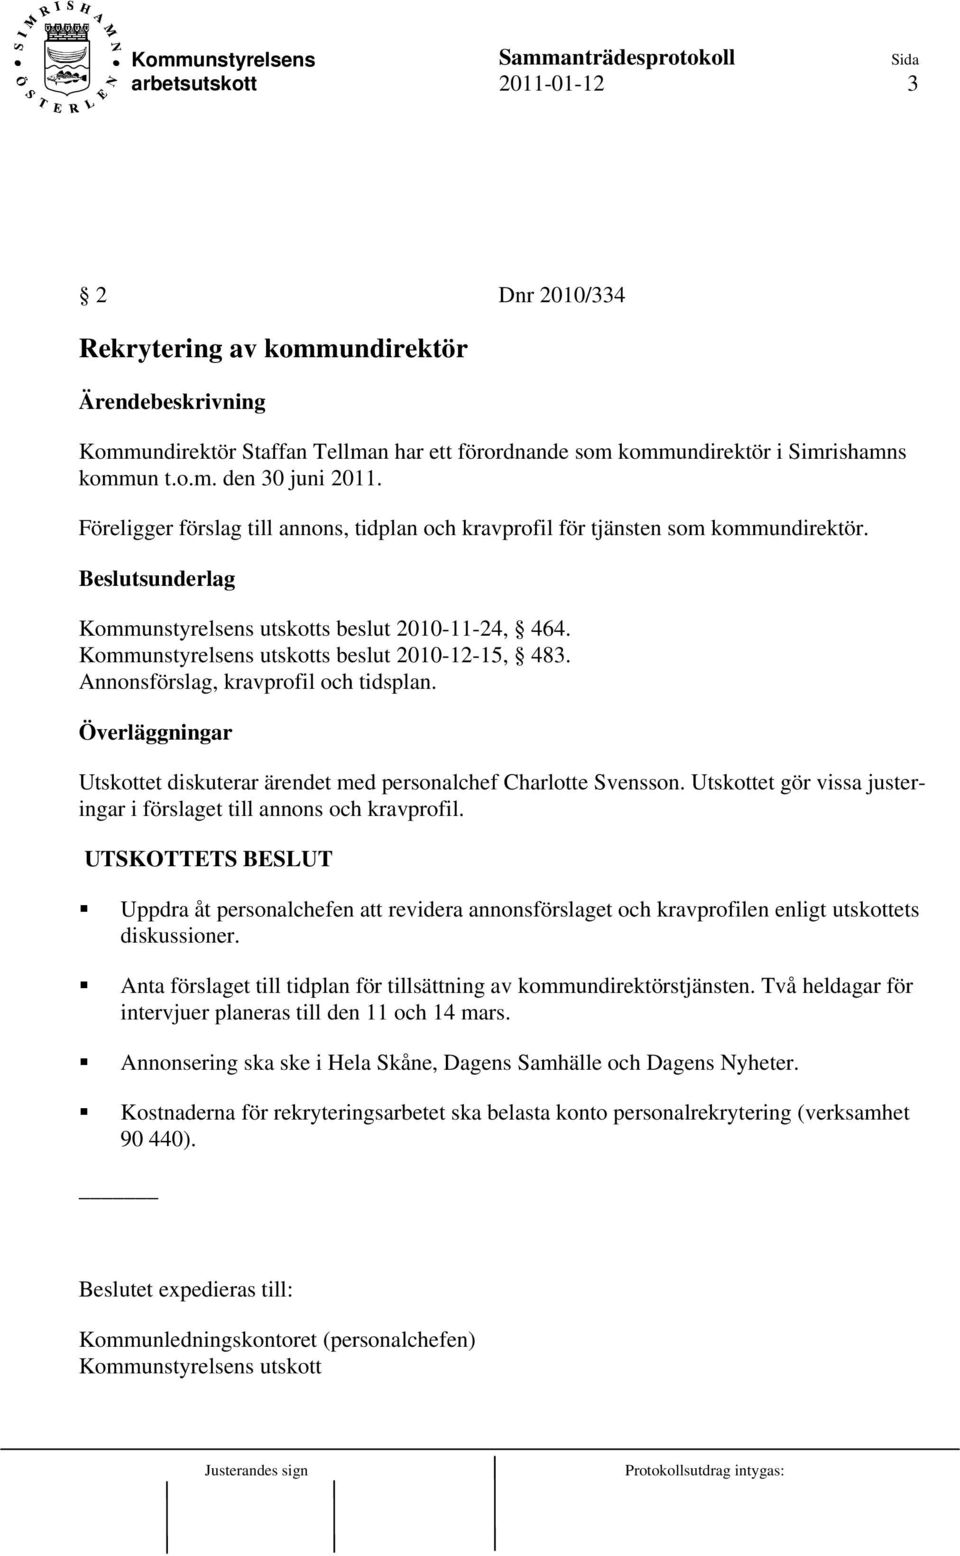 Kommunstyrelsens utskotts beslut 2010-12-15, 483. Annonsförslag, kravprofil och tidsplan. Överläggningar Utskottet diskuterar ärendet med personalchef Charlotte Svensson.